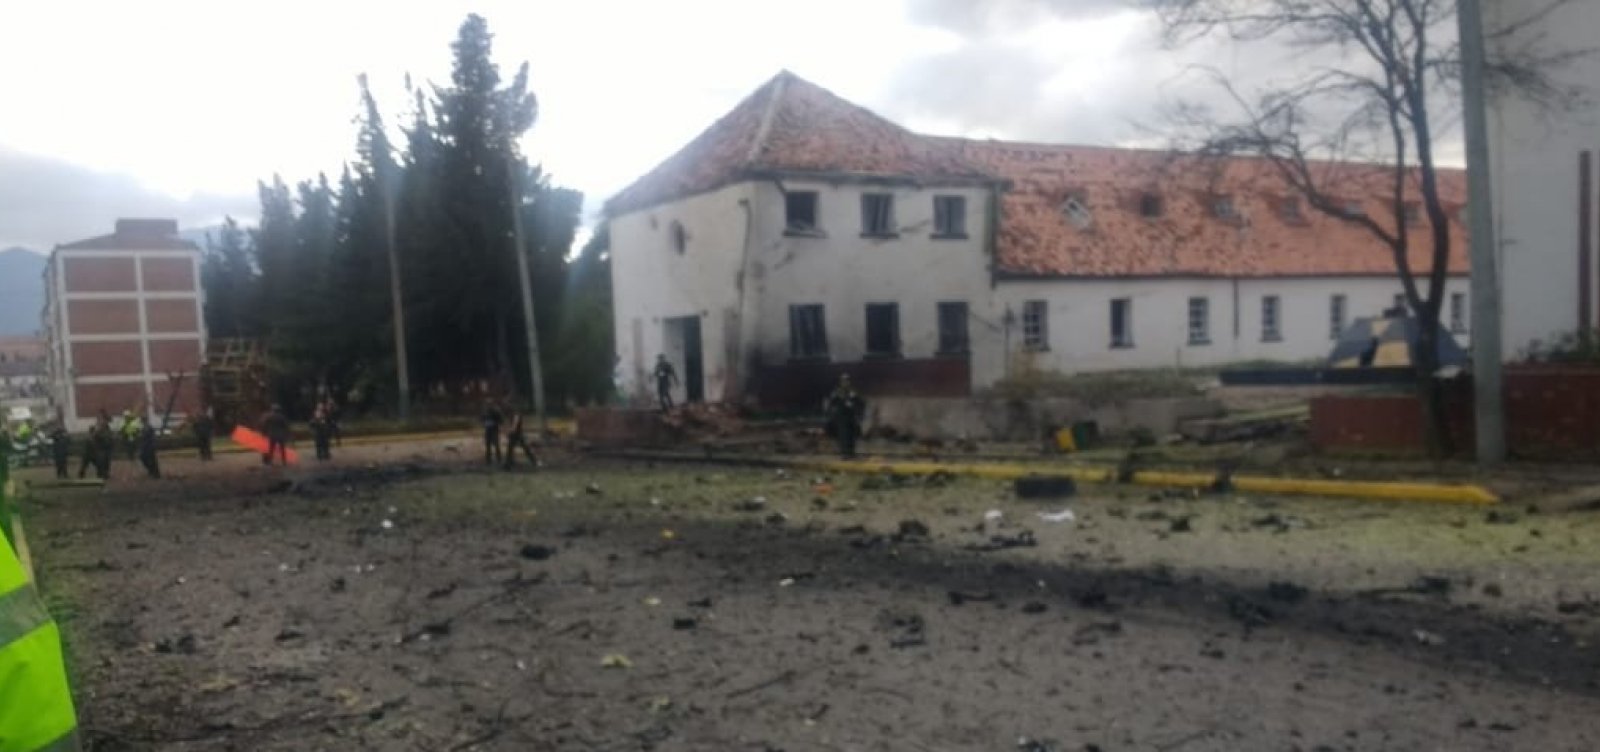 Explosão em carro deixa mortos e feridos na Colômbia 